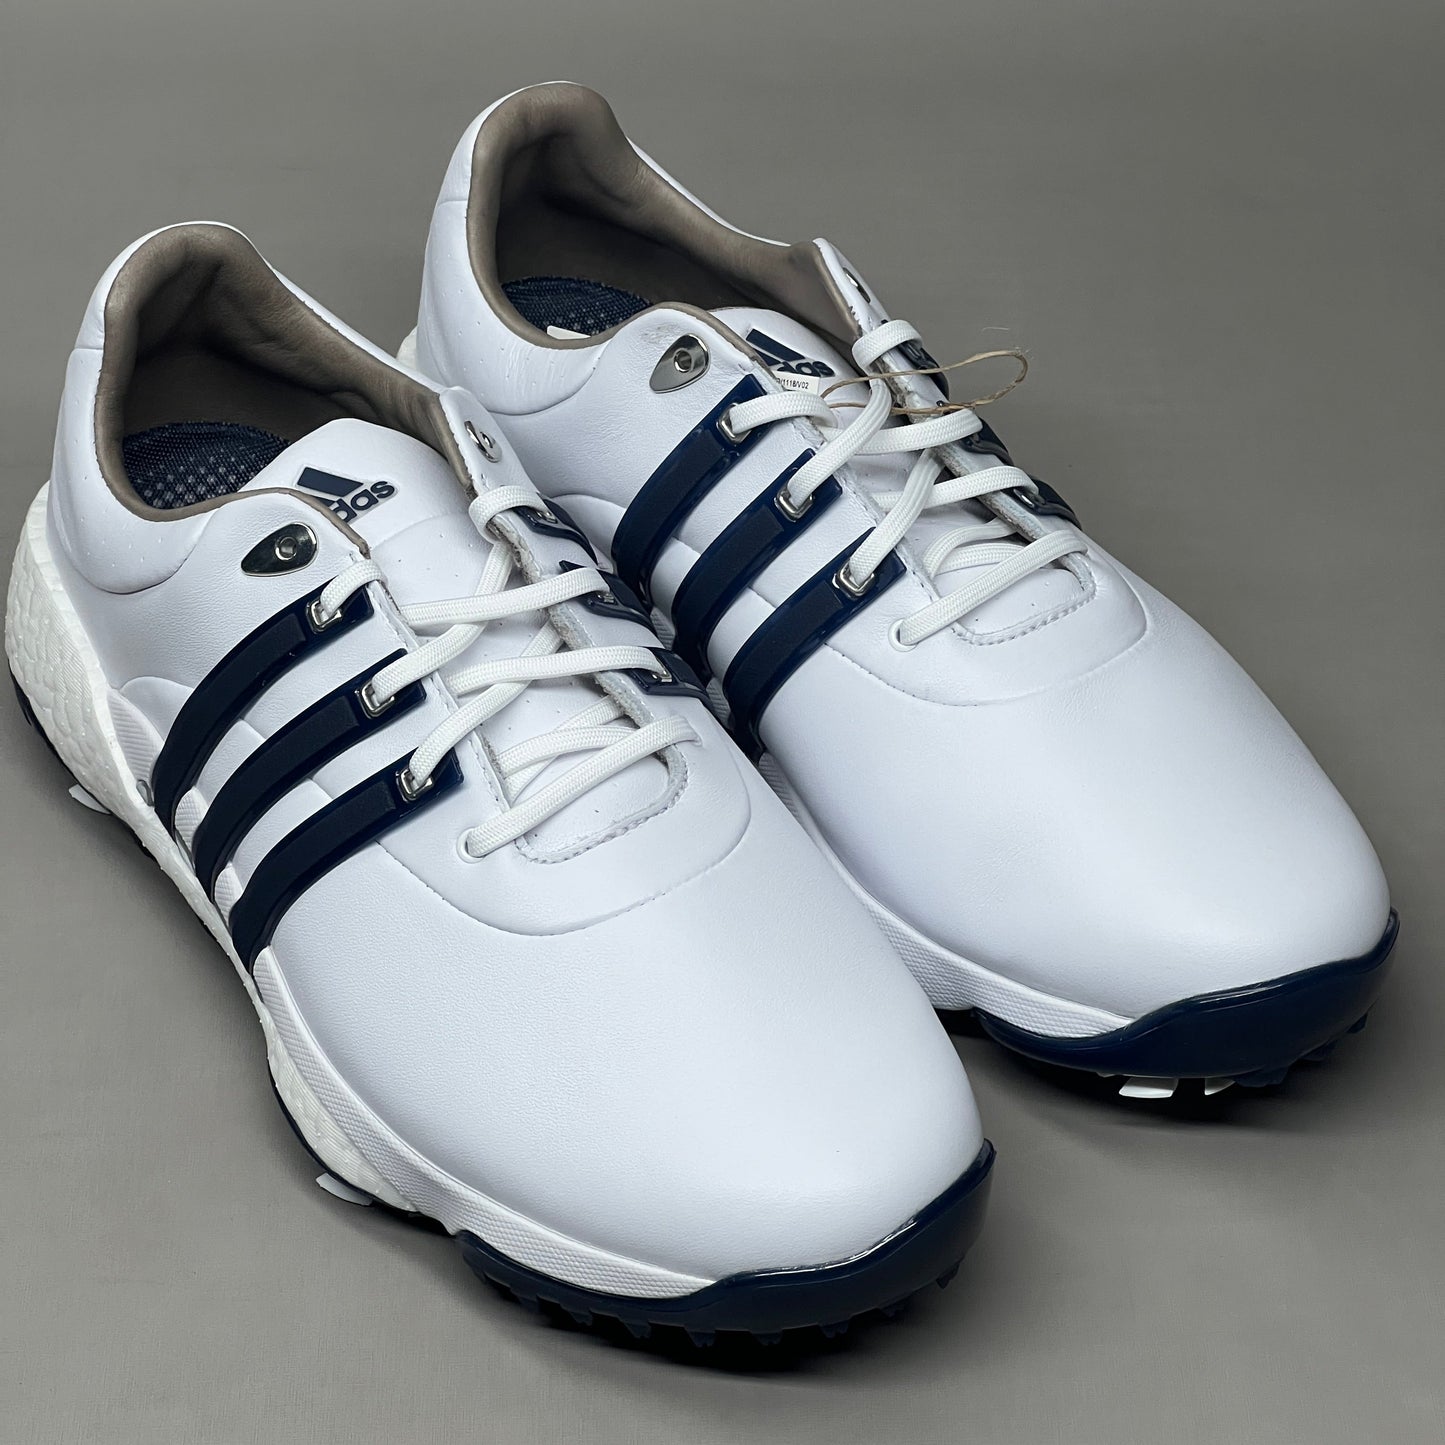 White adidas Tour360 22 Golf Shoes, Men golf